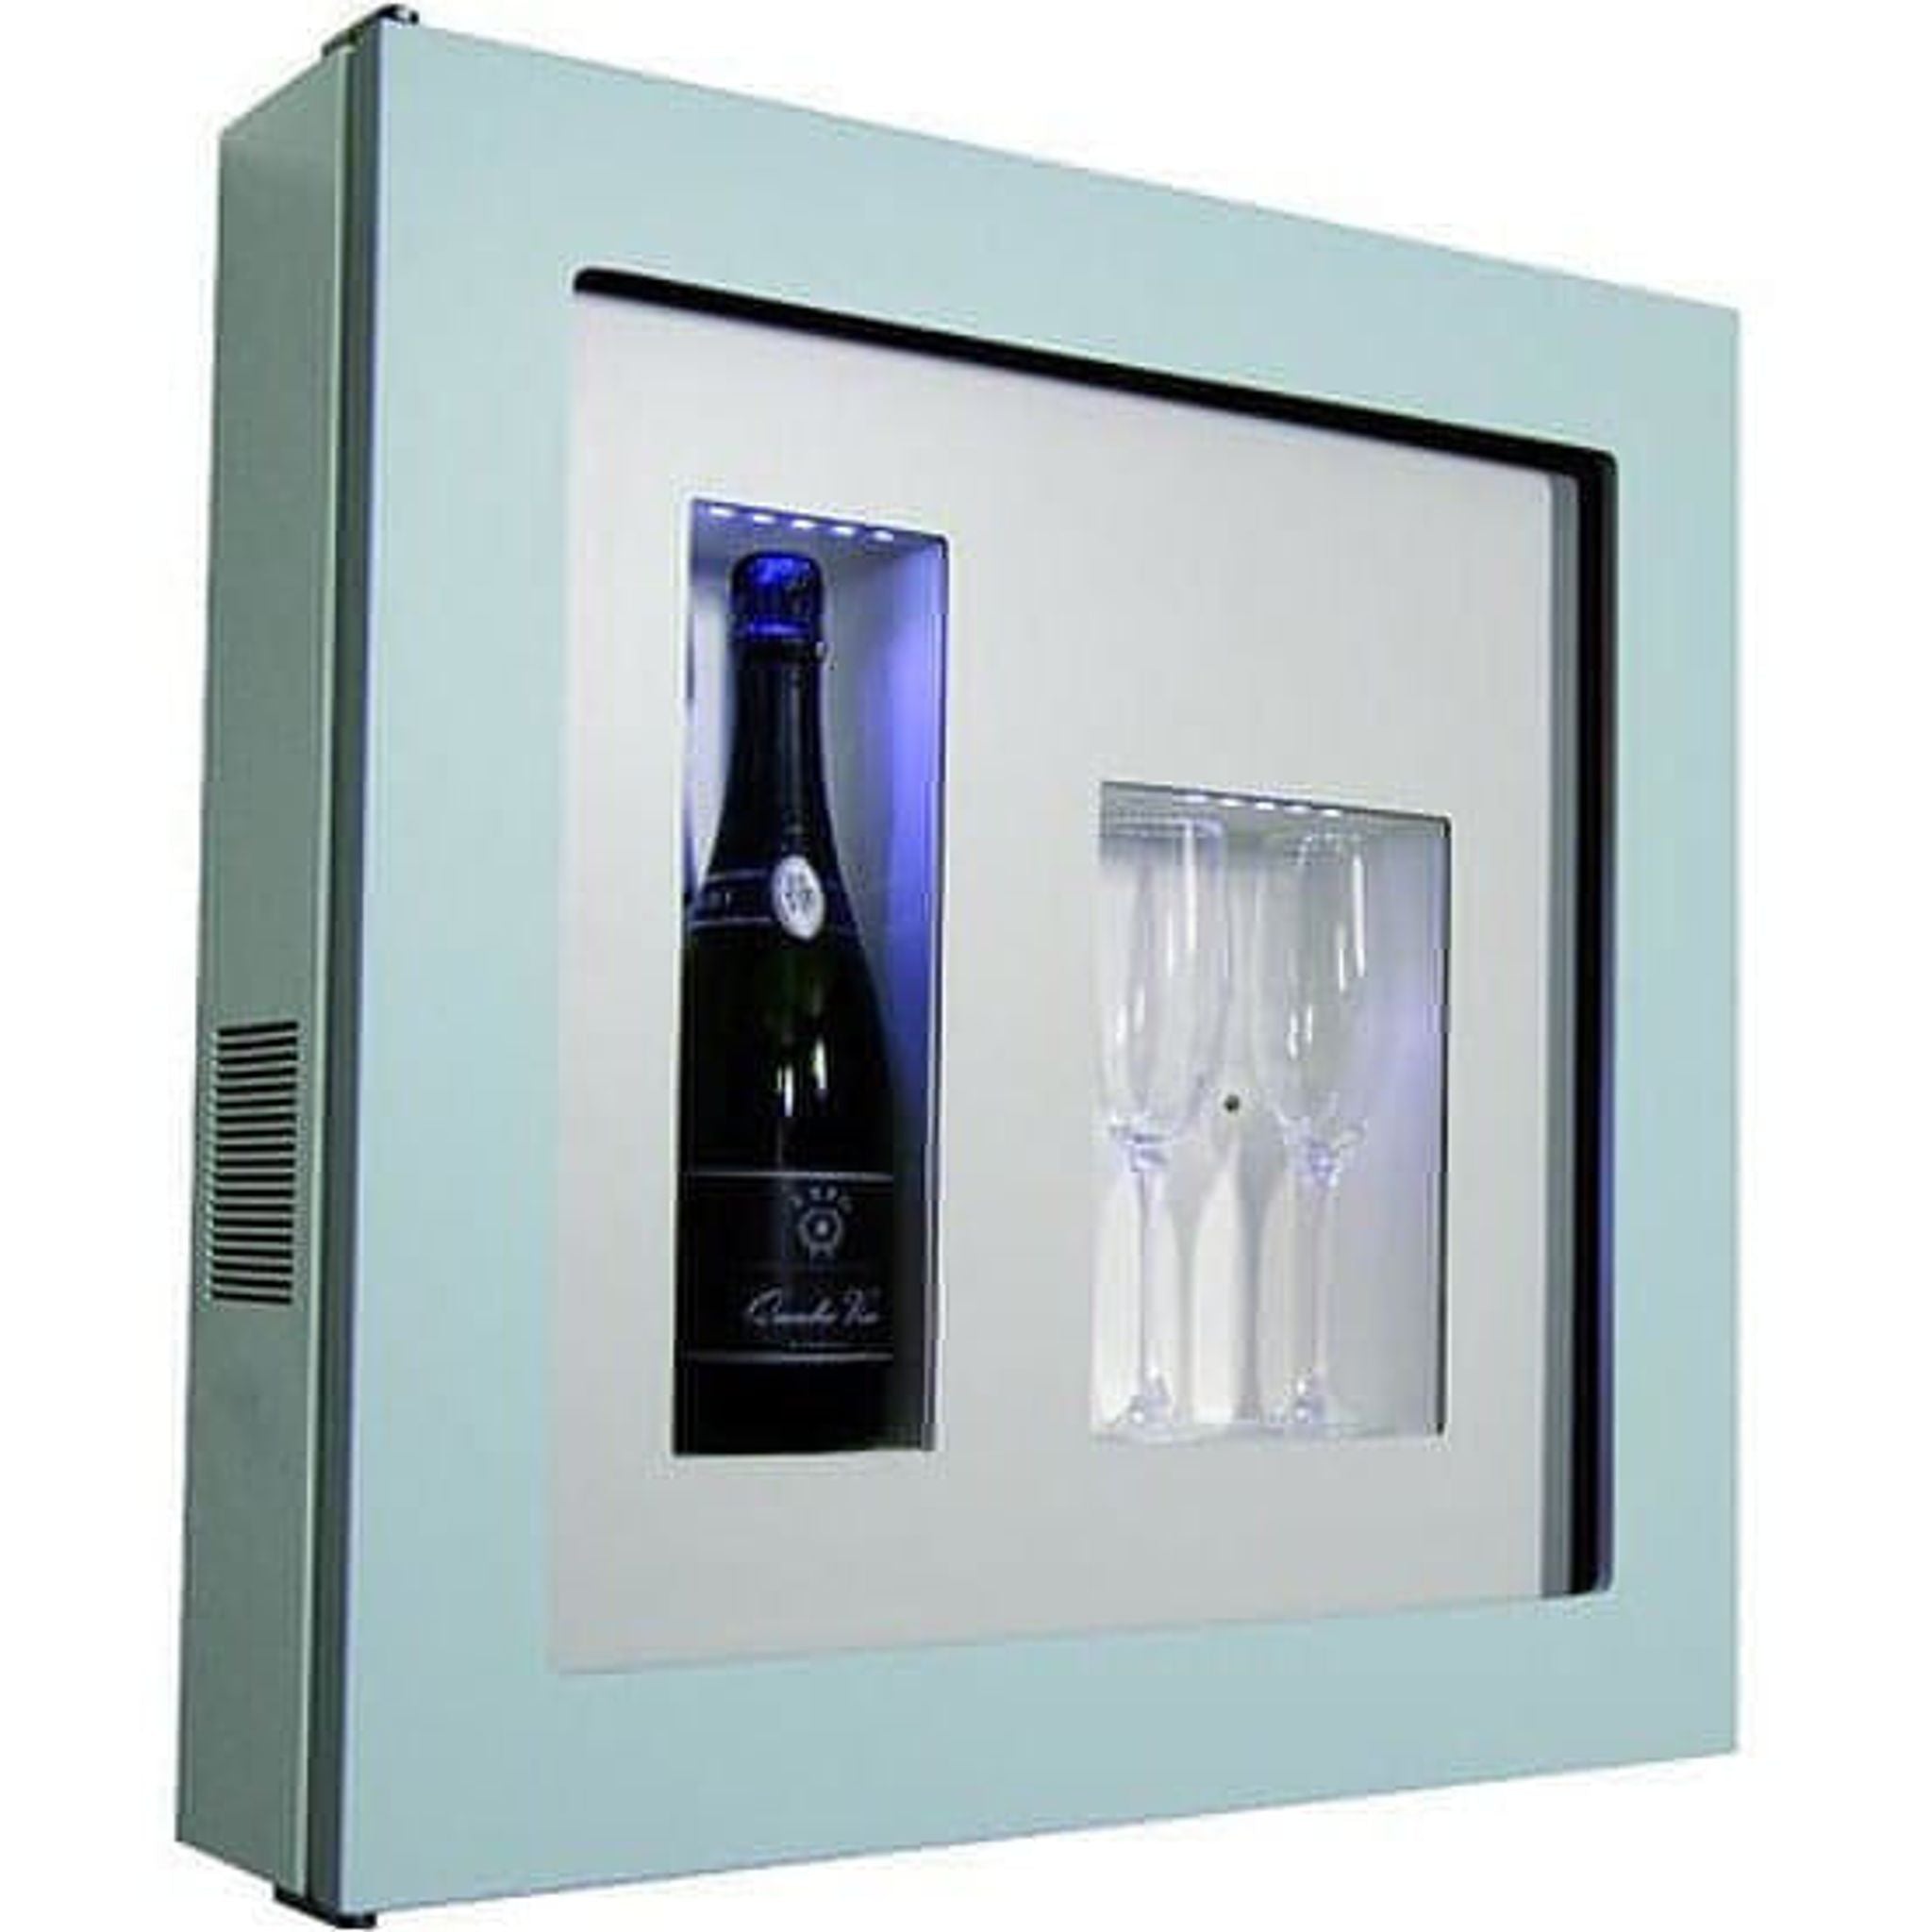 Quadro Vino - Wine Wall QV12 - 1 Bottle Display Unit